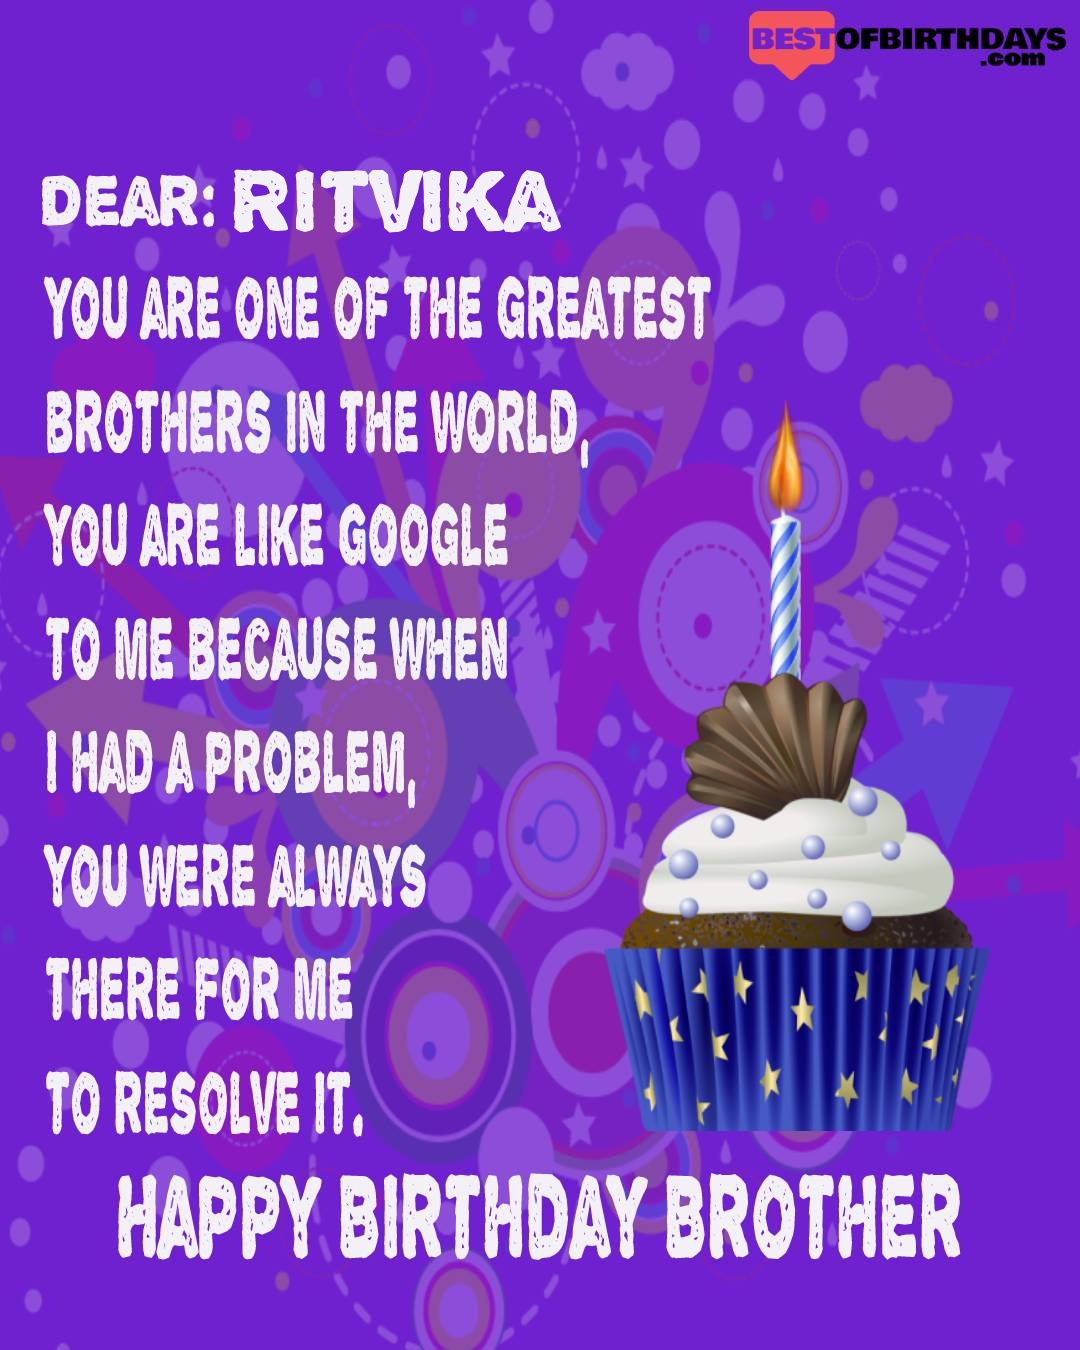 Happy birthday ritvika bhai brother bro